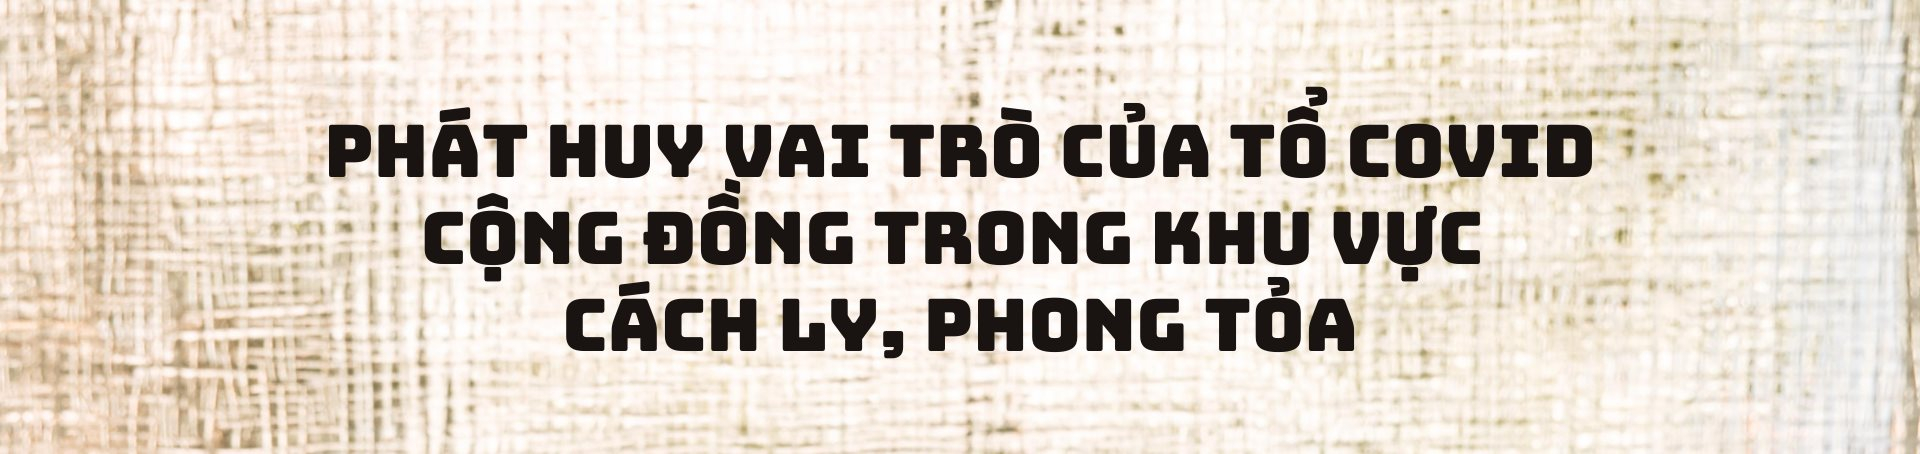 thu-truong-2.png